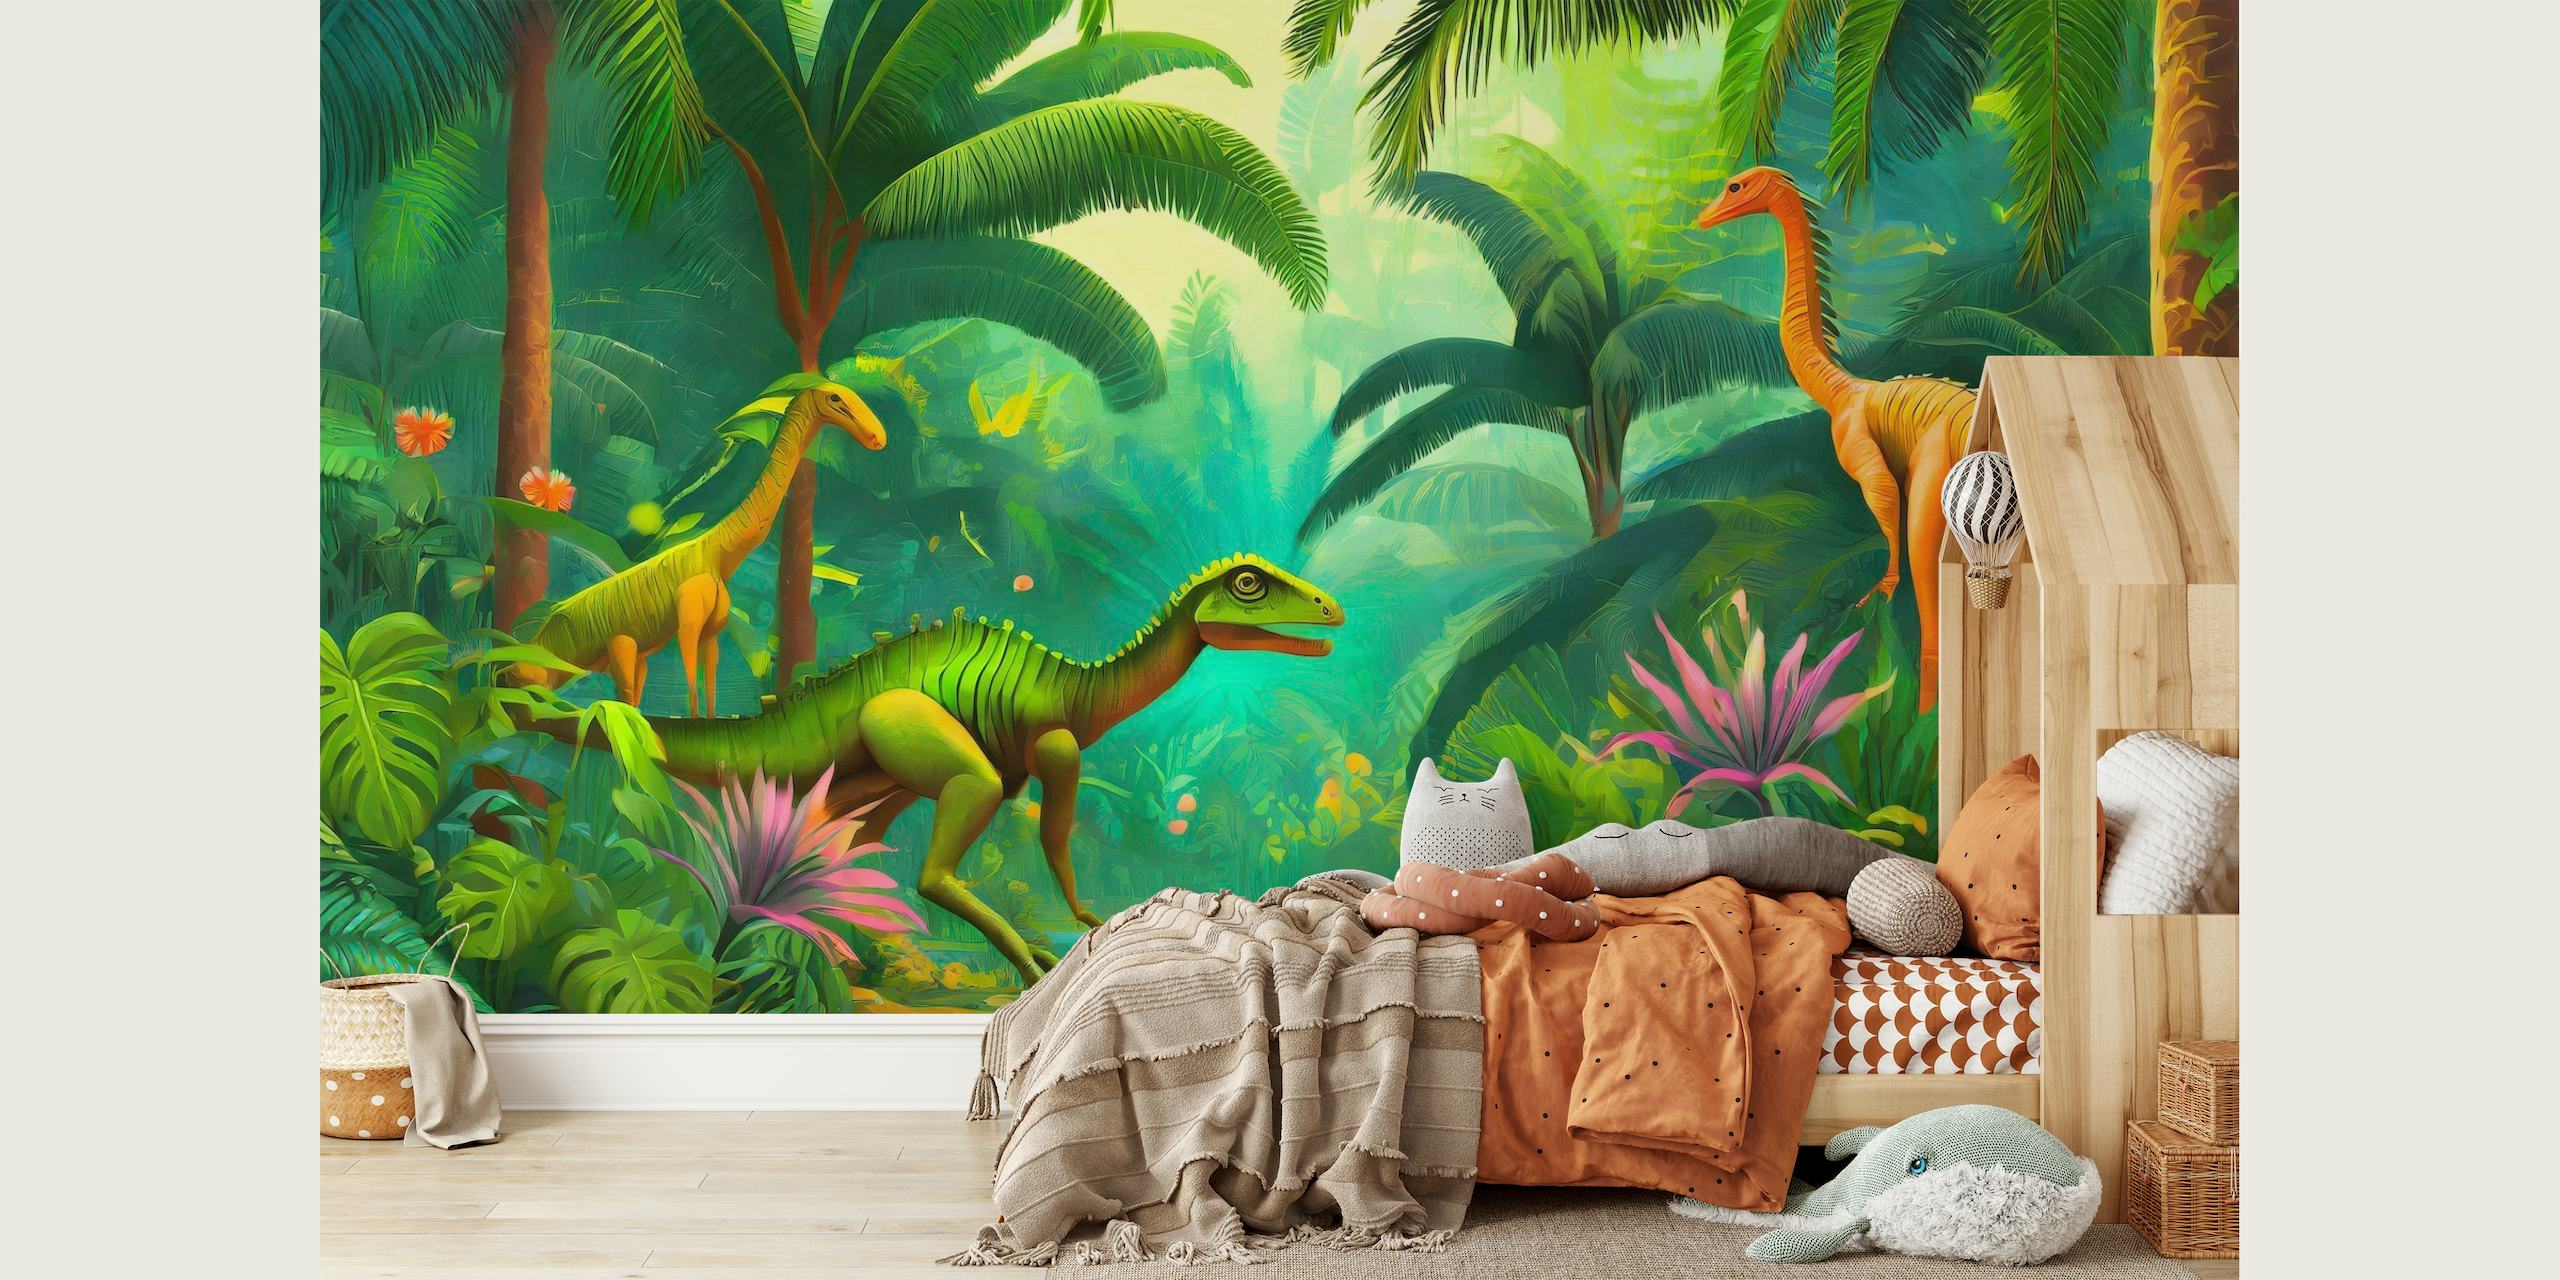 Dinosaur jungle papel pintado